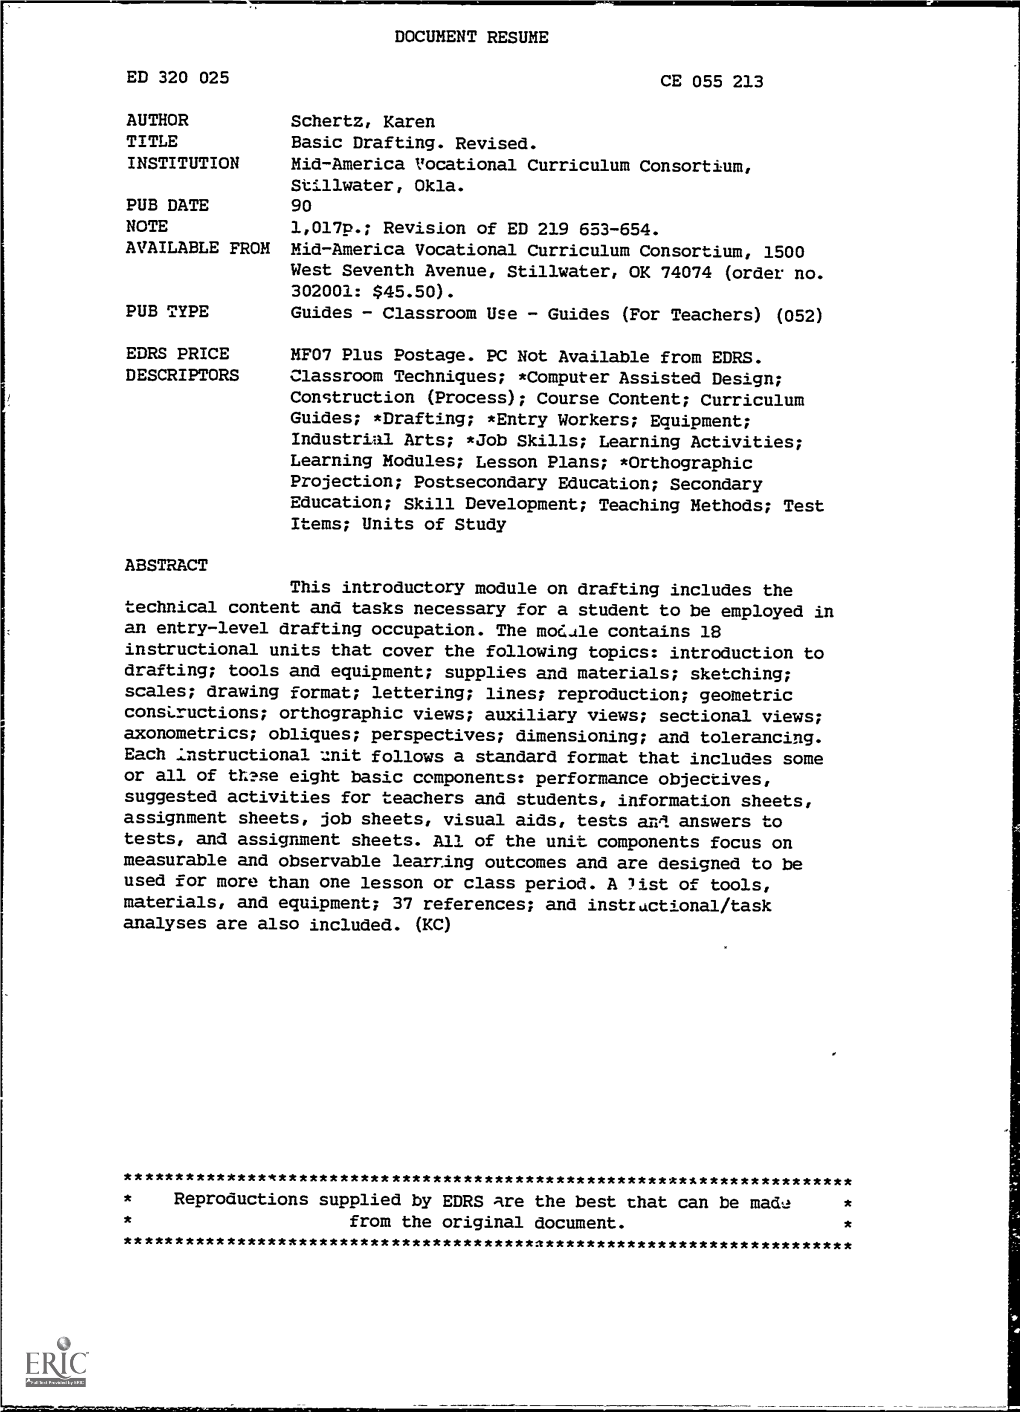 Basic Drafting. Revised. INSTITUTION Mid-America Vocational Curriculum Consortium, Stillwater, Okla